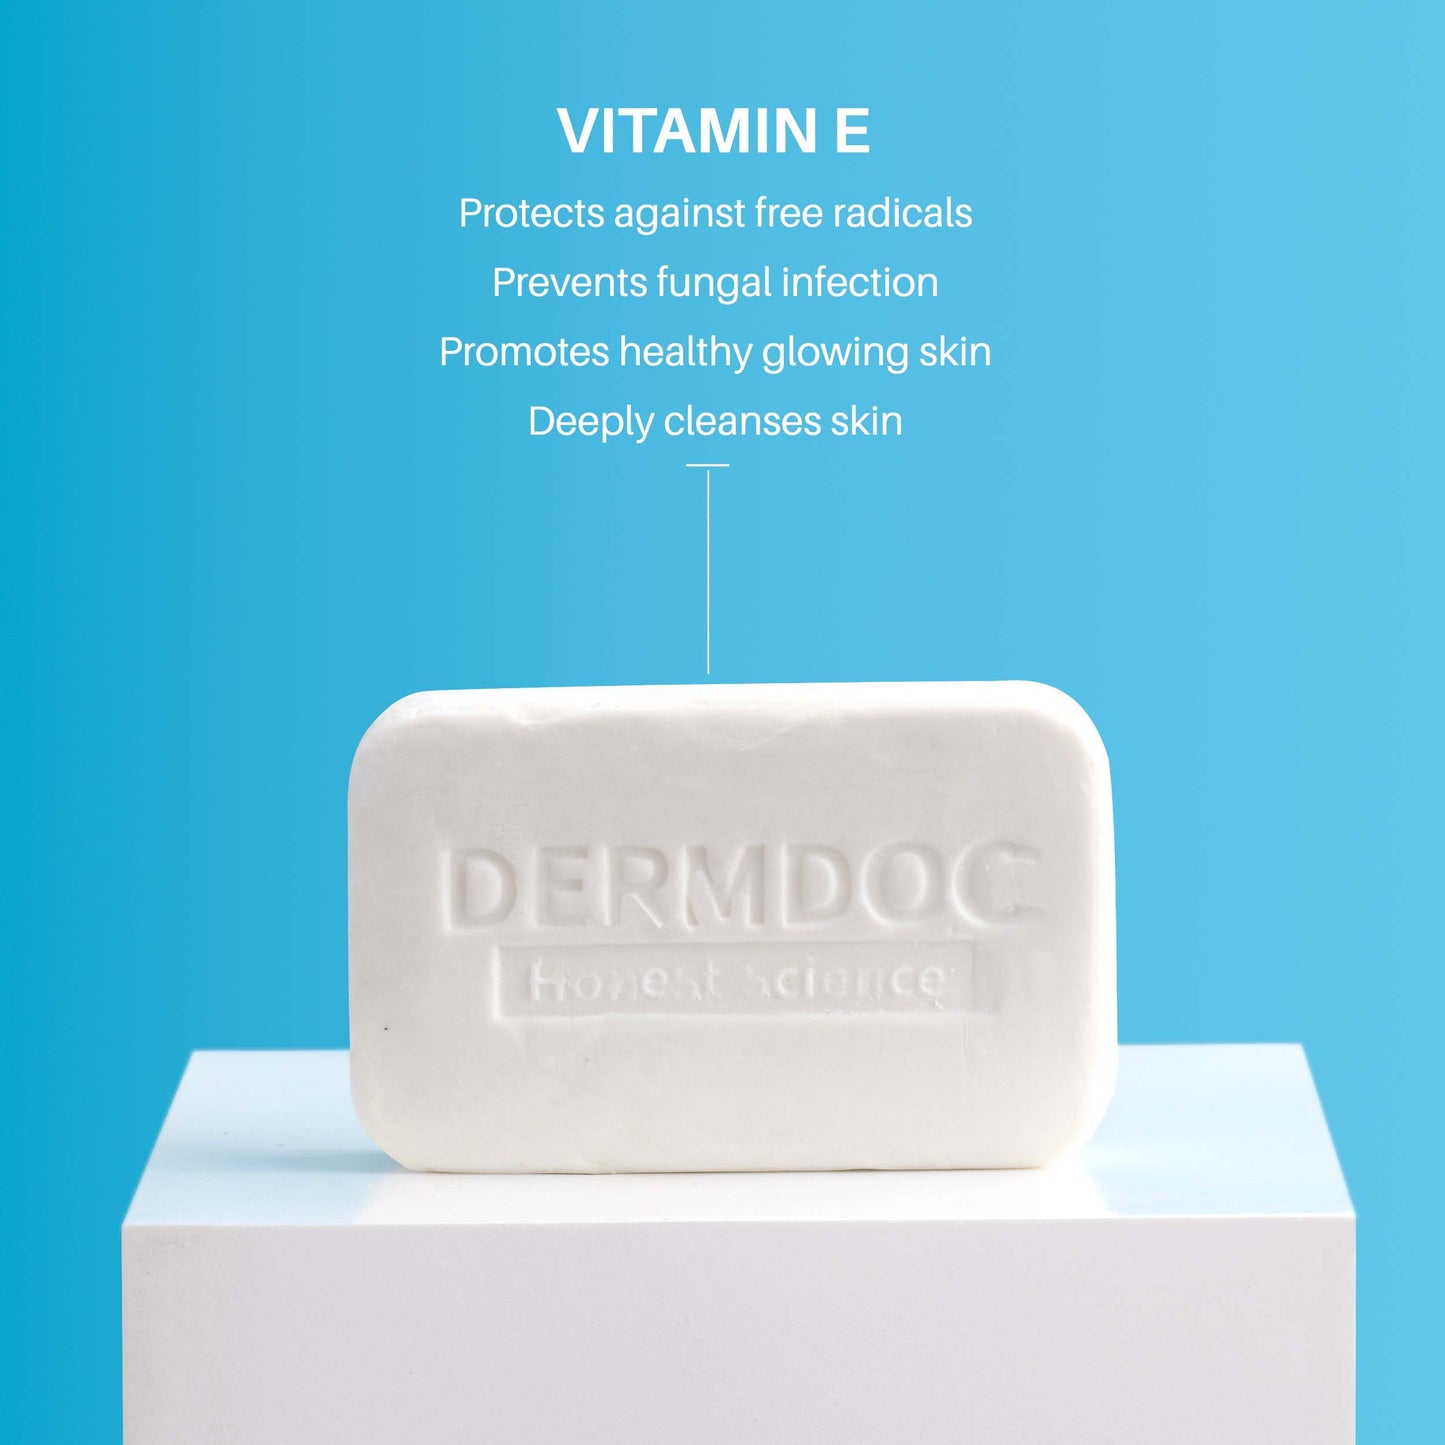 DermDoc 0.5% Vitamin E Cleansing Bar For Moisturized Skin (75g)